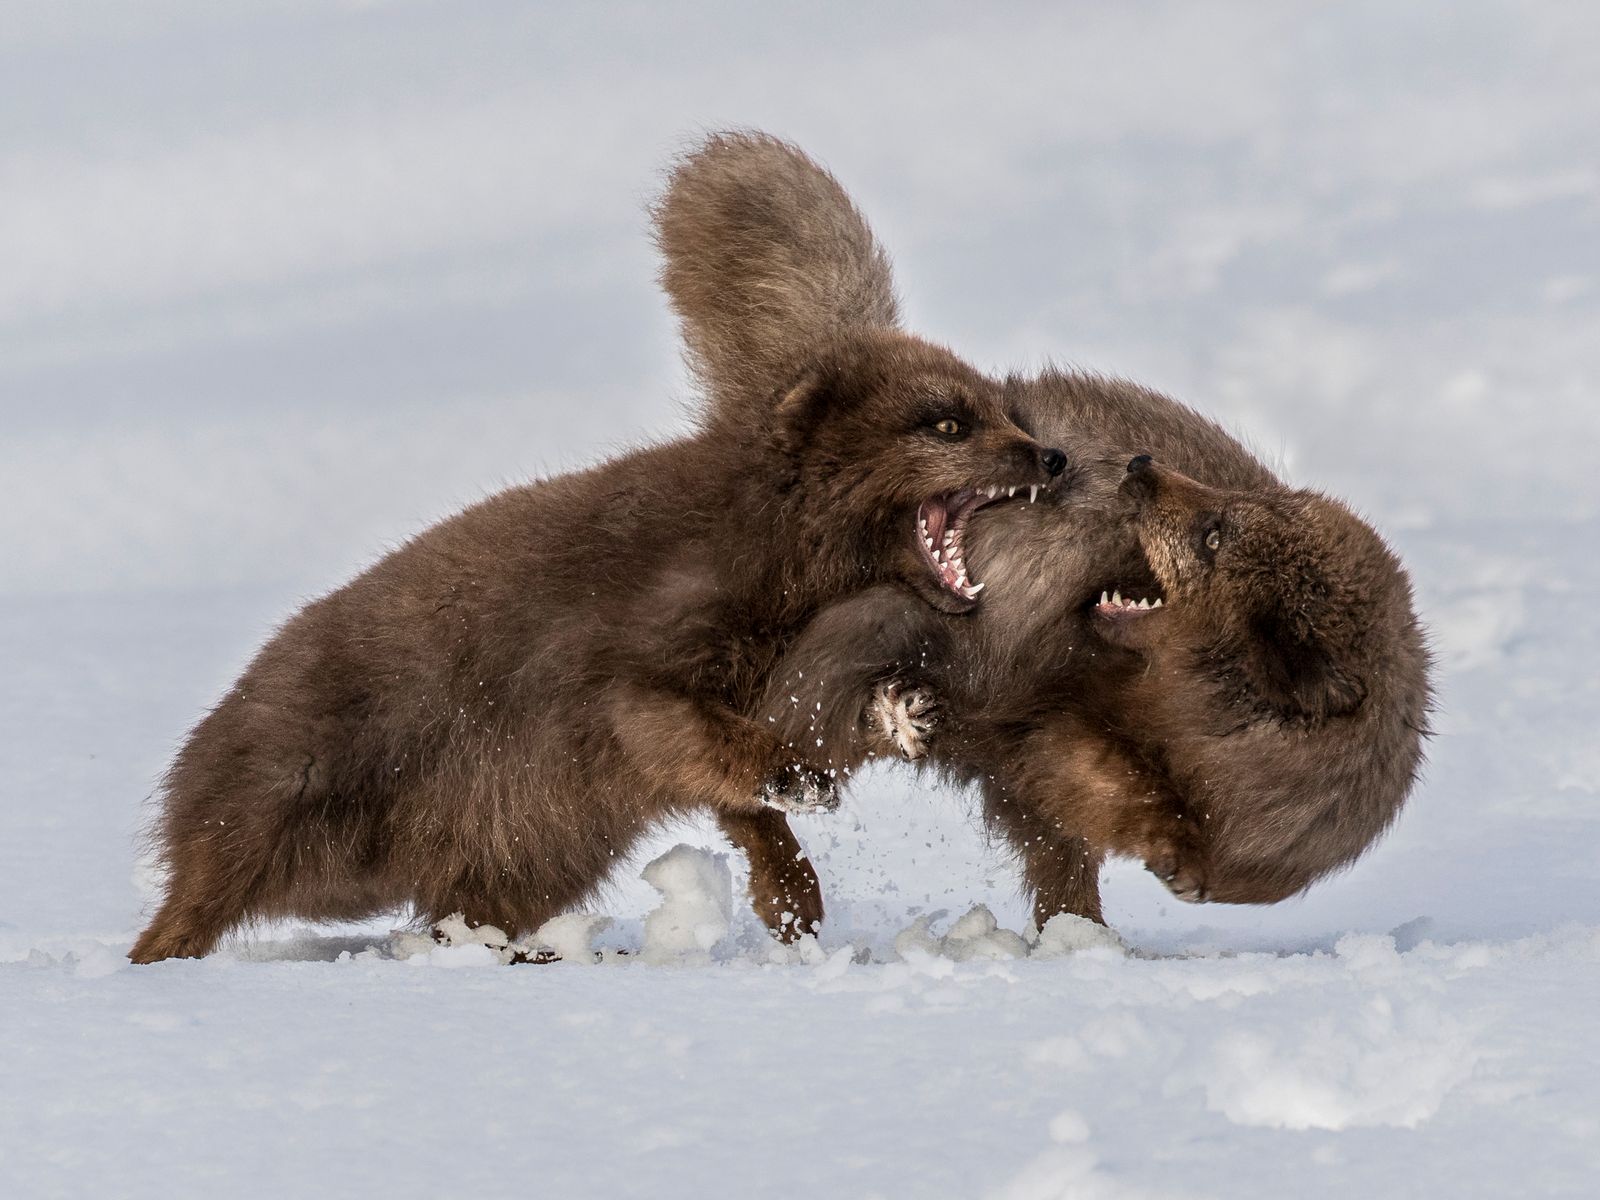 Arctic Fox Squabble